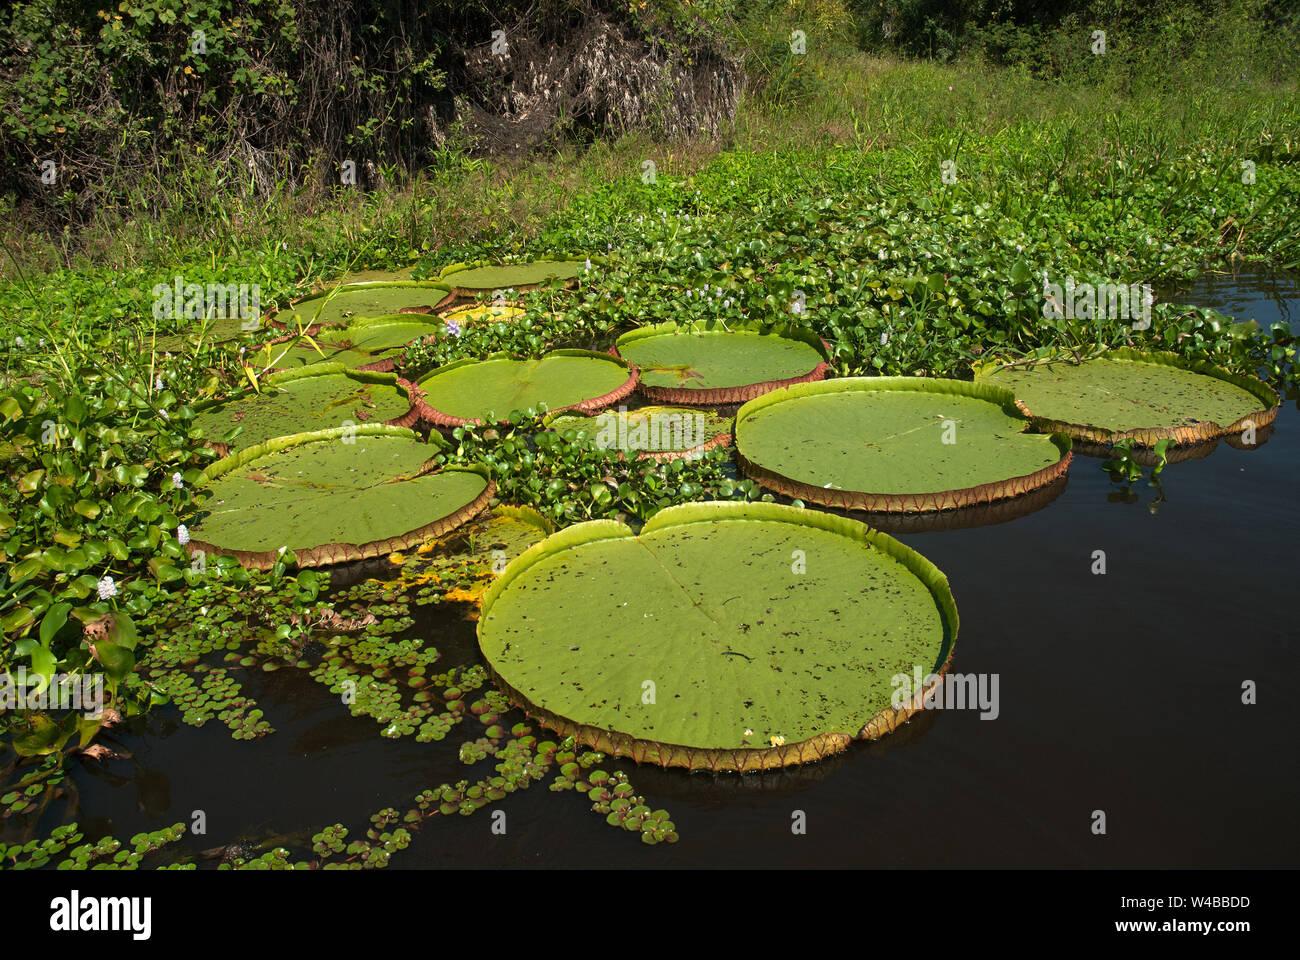 Vitoria Regia, aquatic plant species in the Paraguai river in the state of Mato Grosso do Sul, Brazil Stock Photo